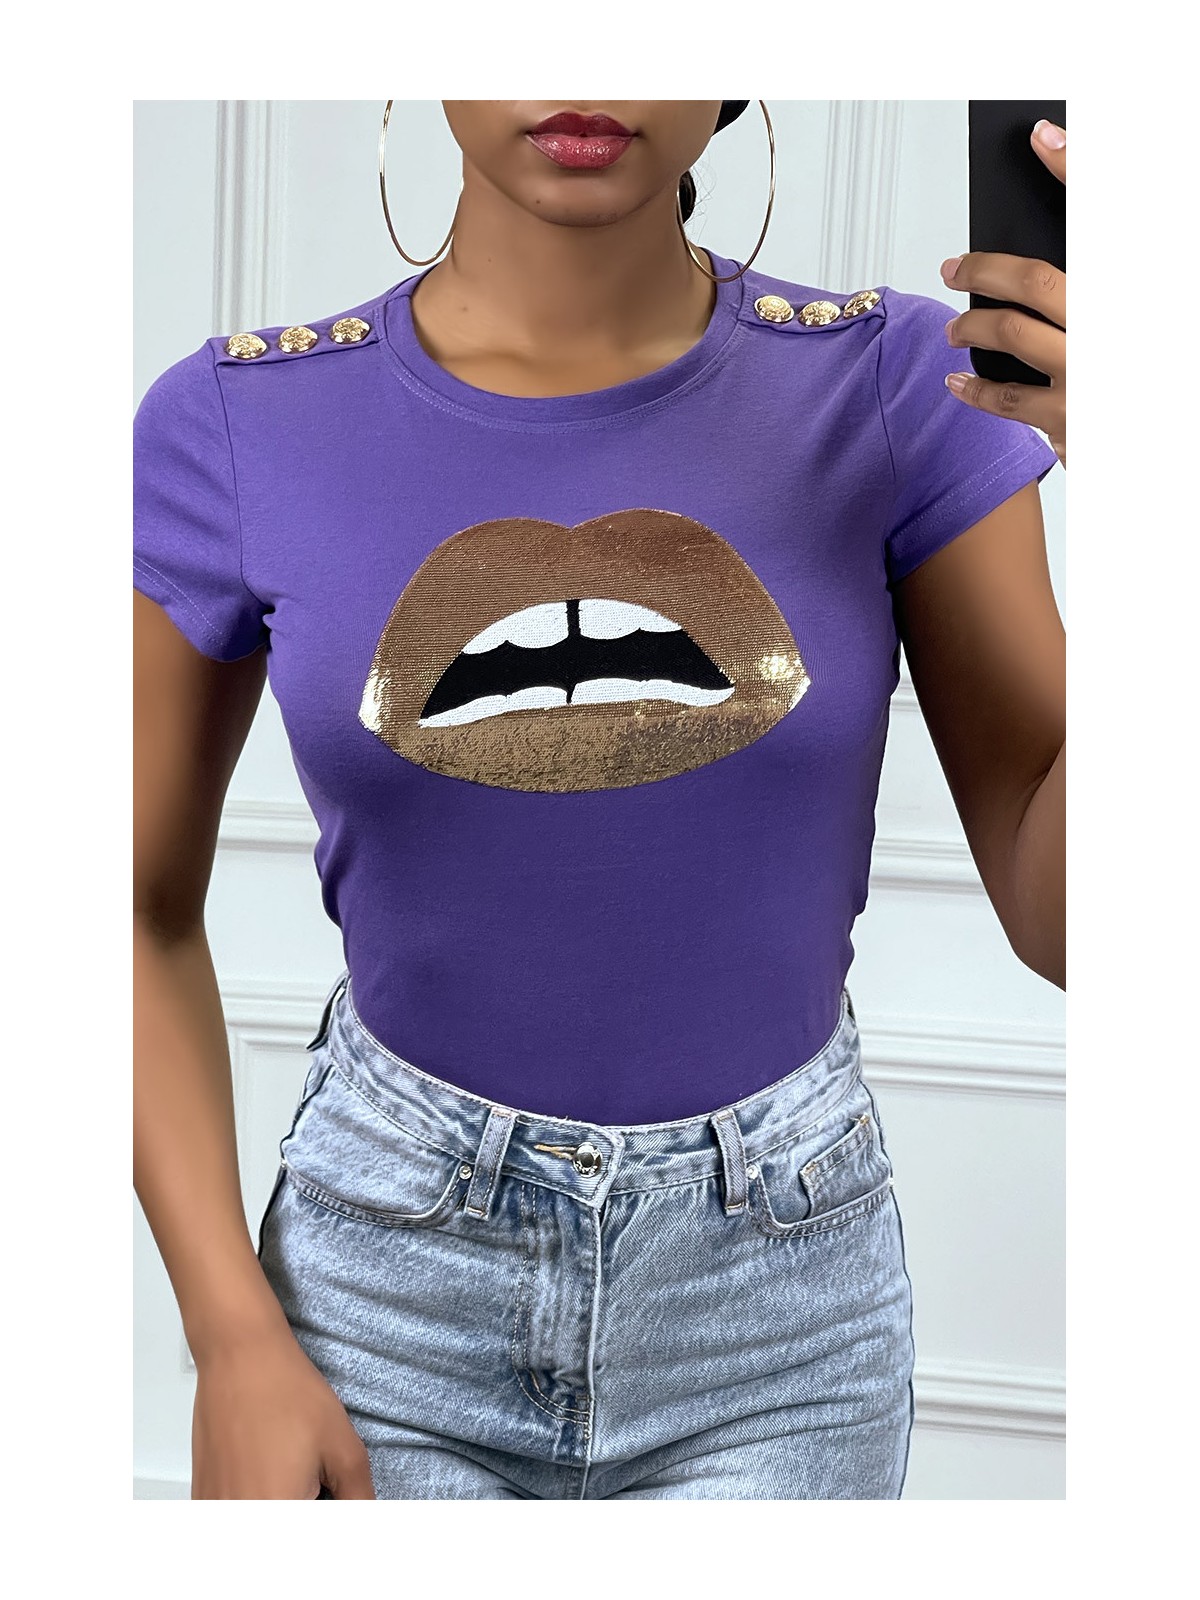 Tee shirt violet avec dessins et boutons dorée - 1